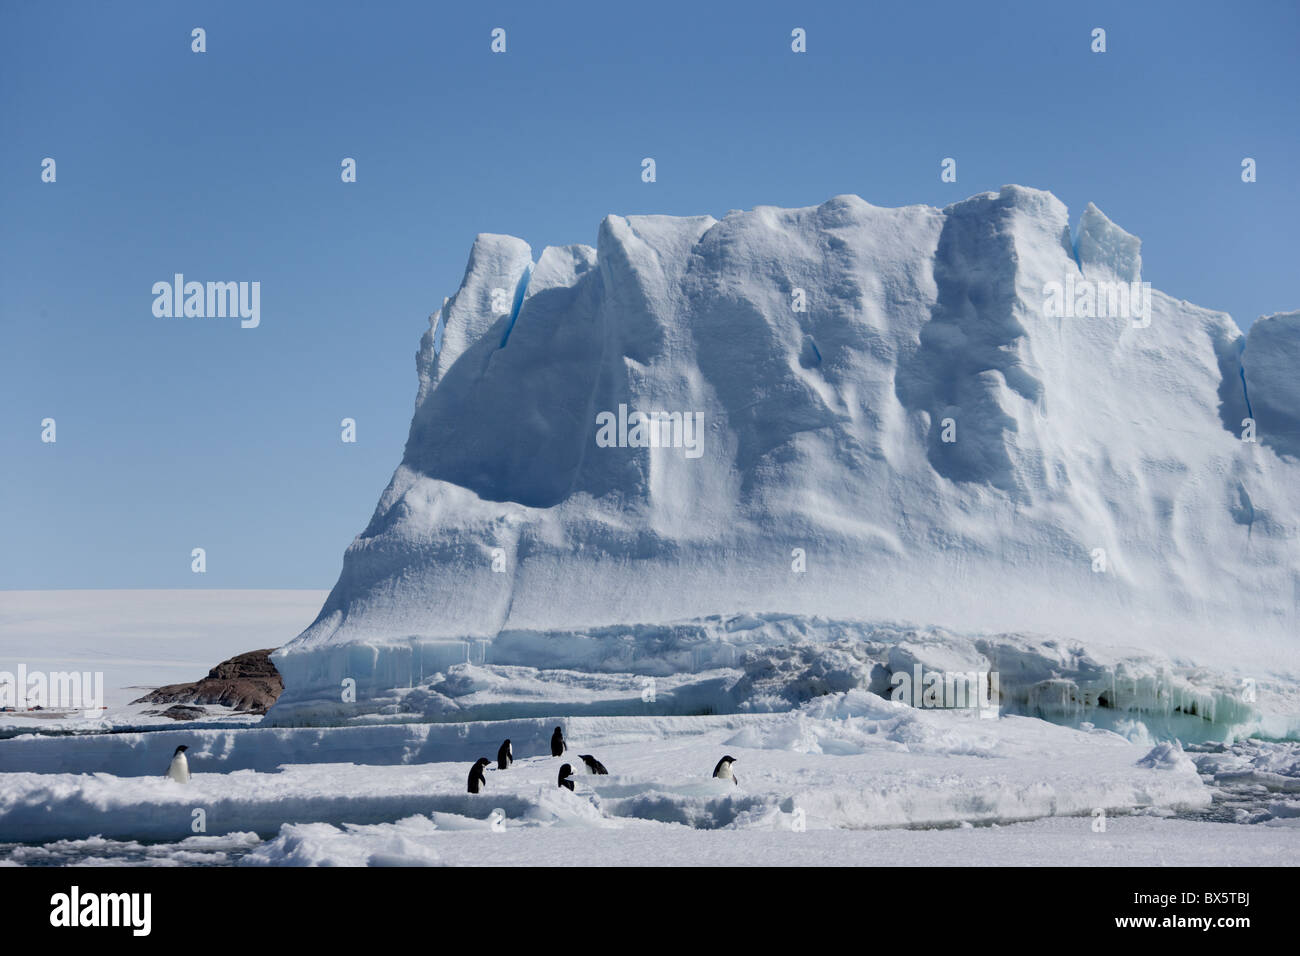 Les manchots Adélie (Pygoscelis adeliae), en face d'un iceberg, Dumont d'Urville, Antarctique, les régions polaires Banque D'Images